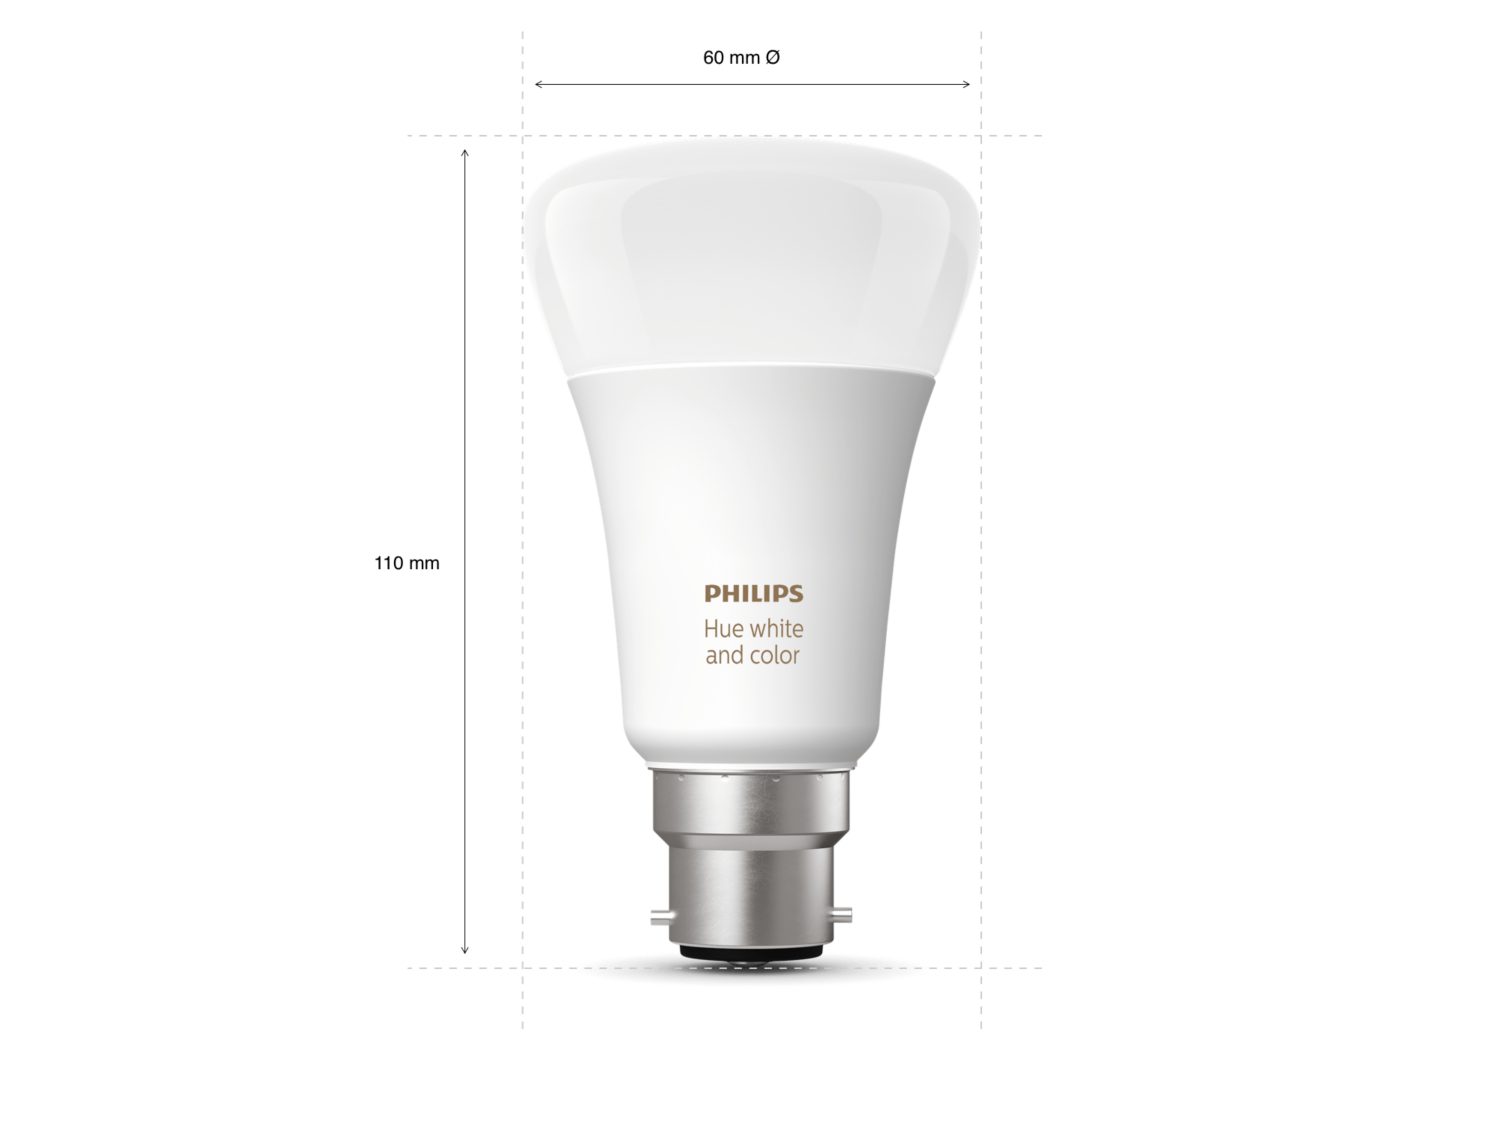 Philips Hue Starter Kit: 3 B22 Bulbs - Hue Bridge - Dimmer switch